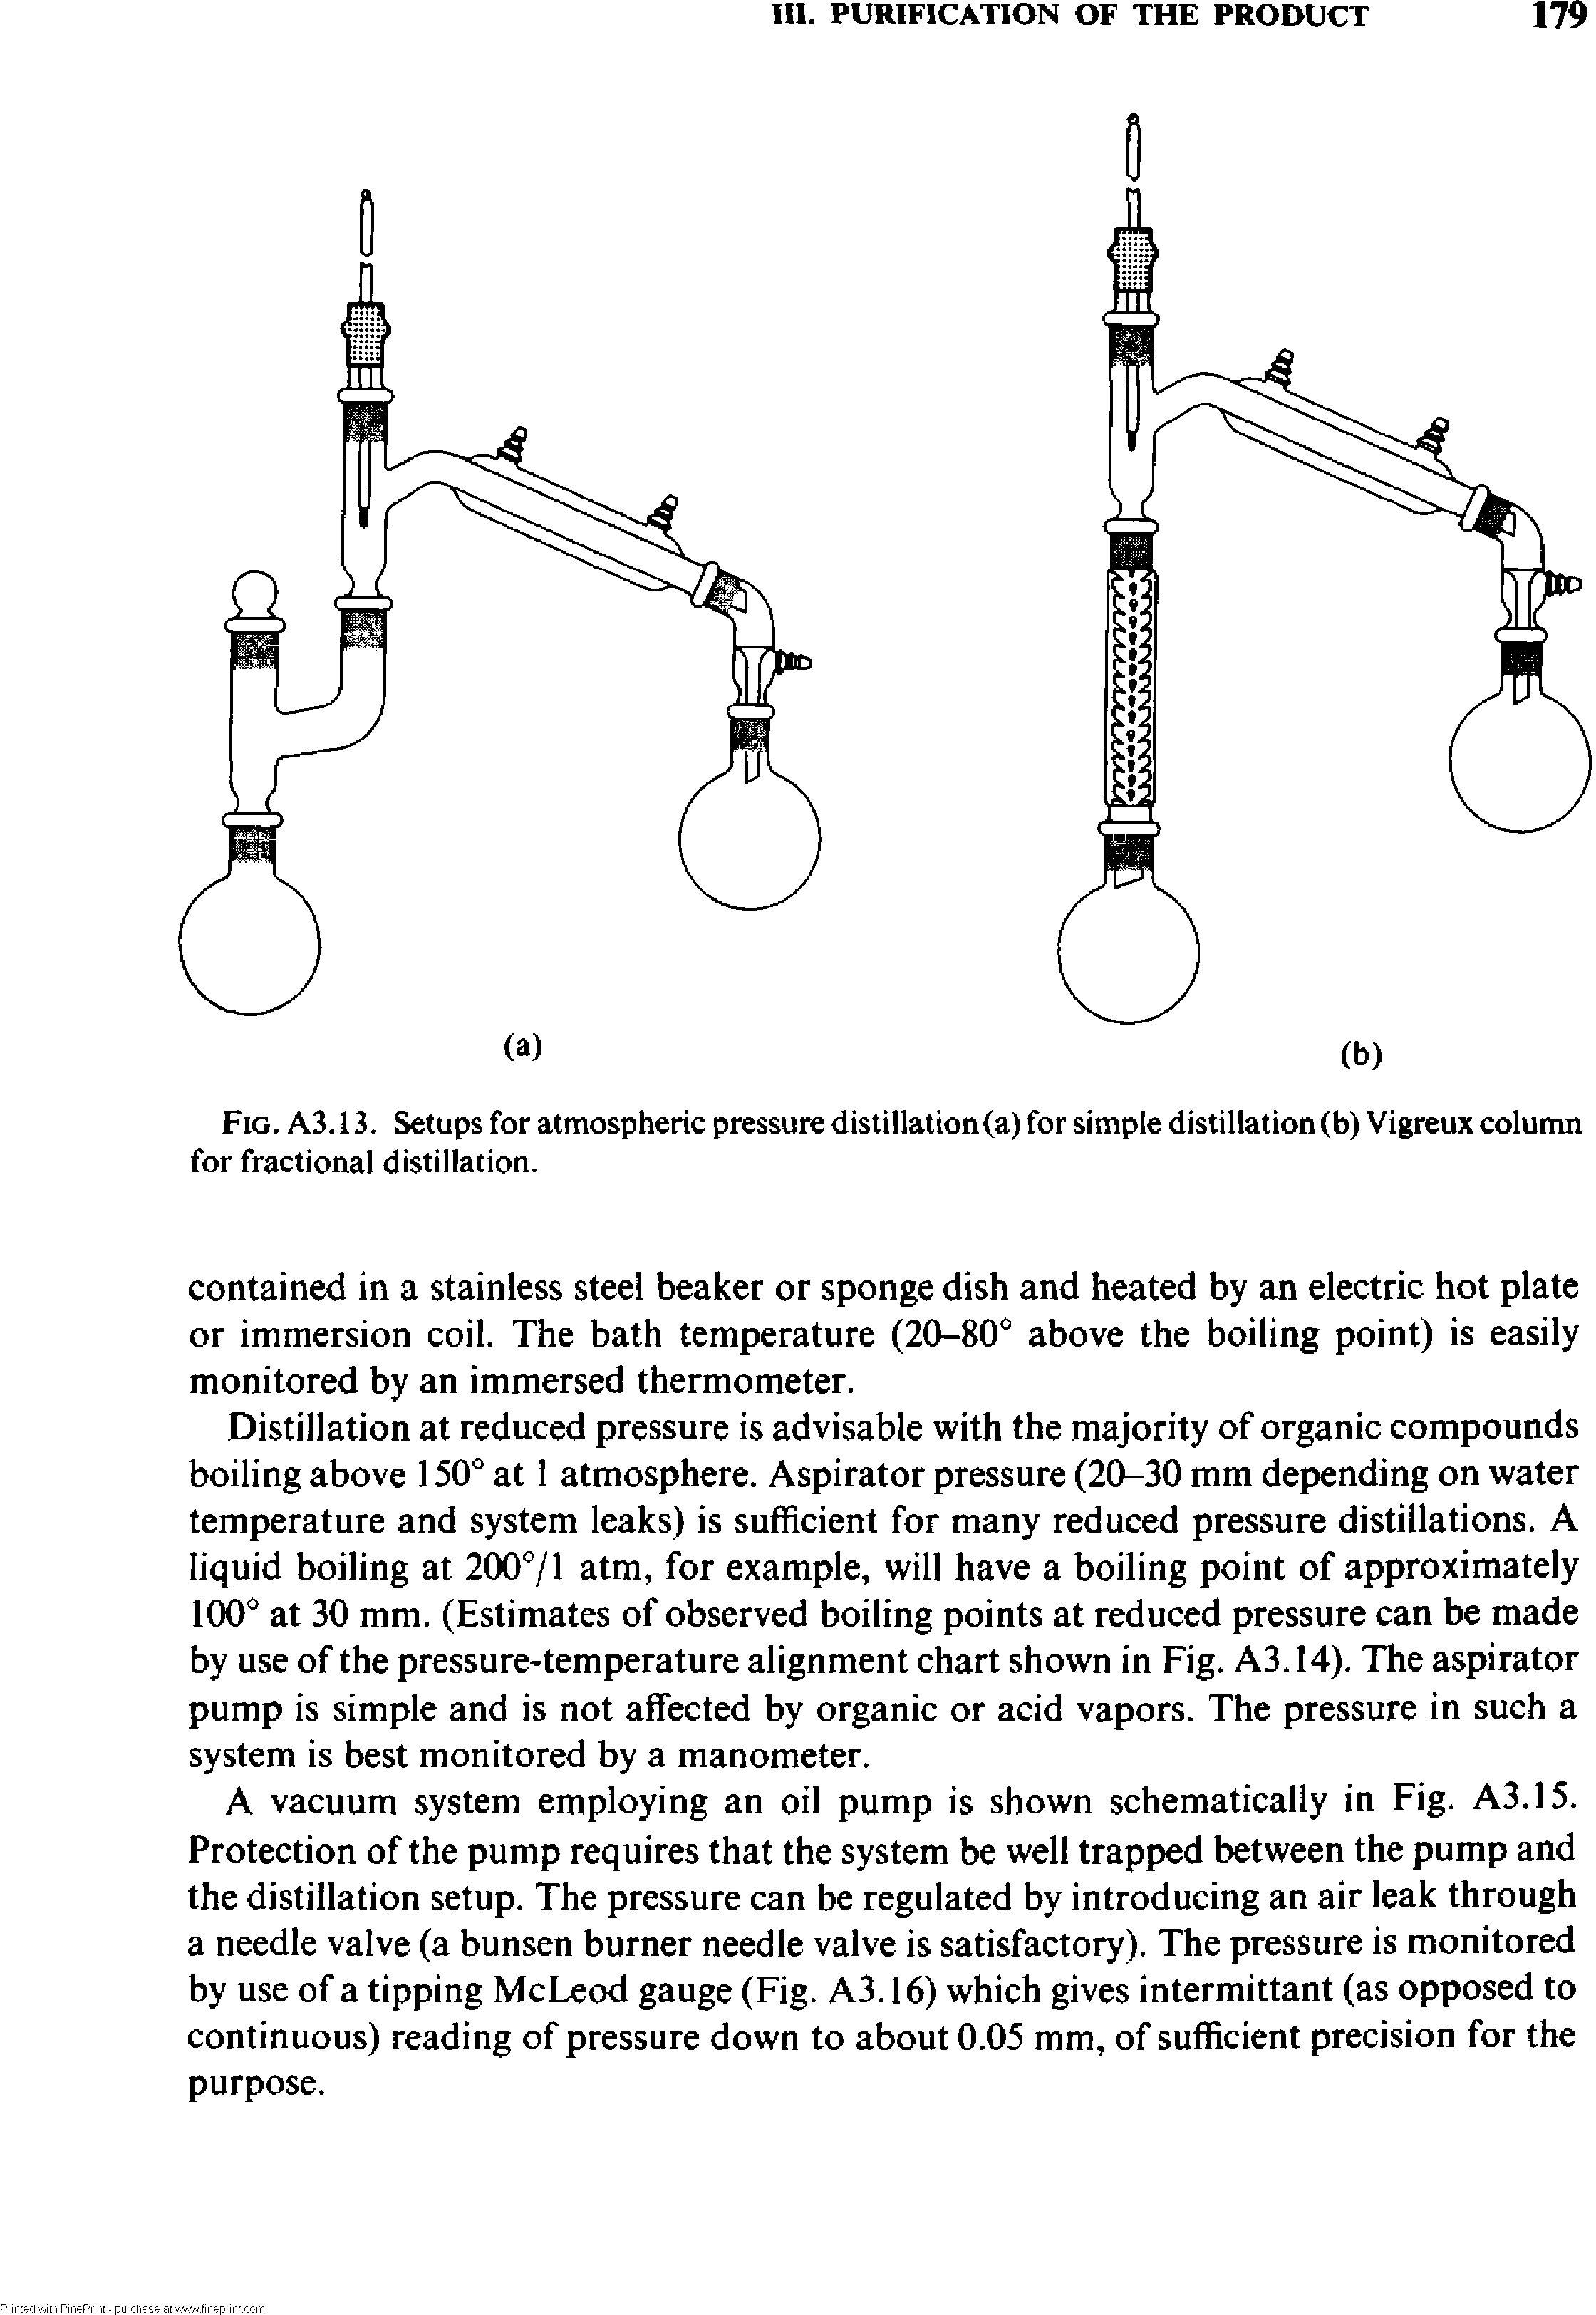 Fig. A3.13. Setups for atmospheric pressure distillation (a) for simple distillation (b) Vigreux column for fractional distillation.